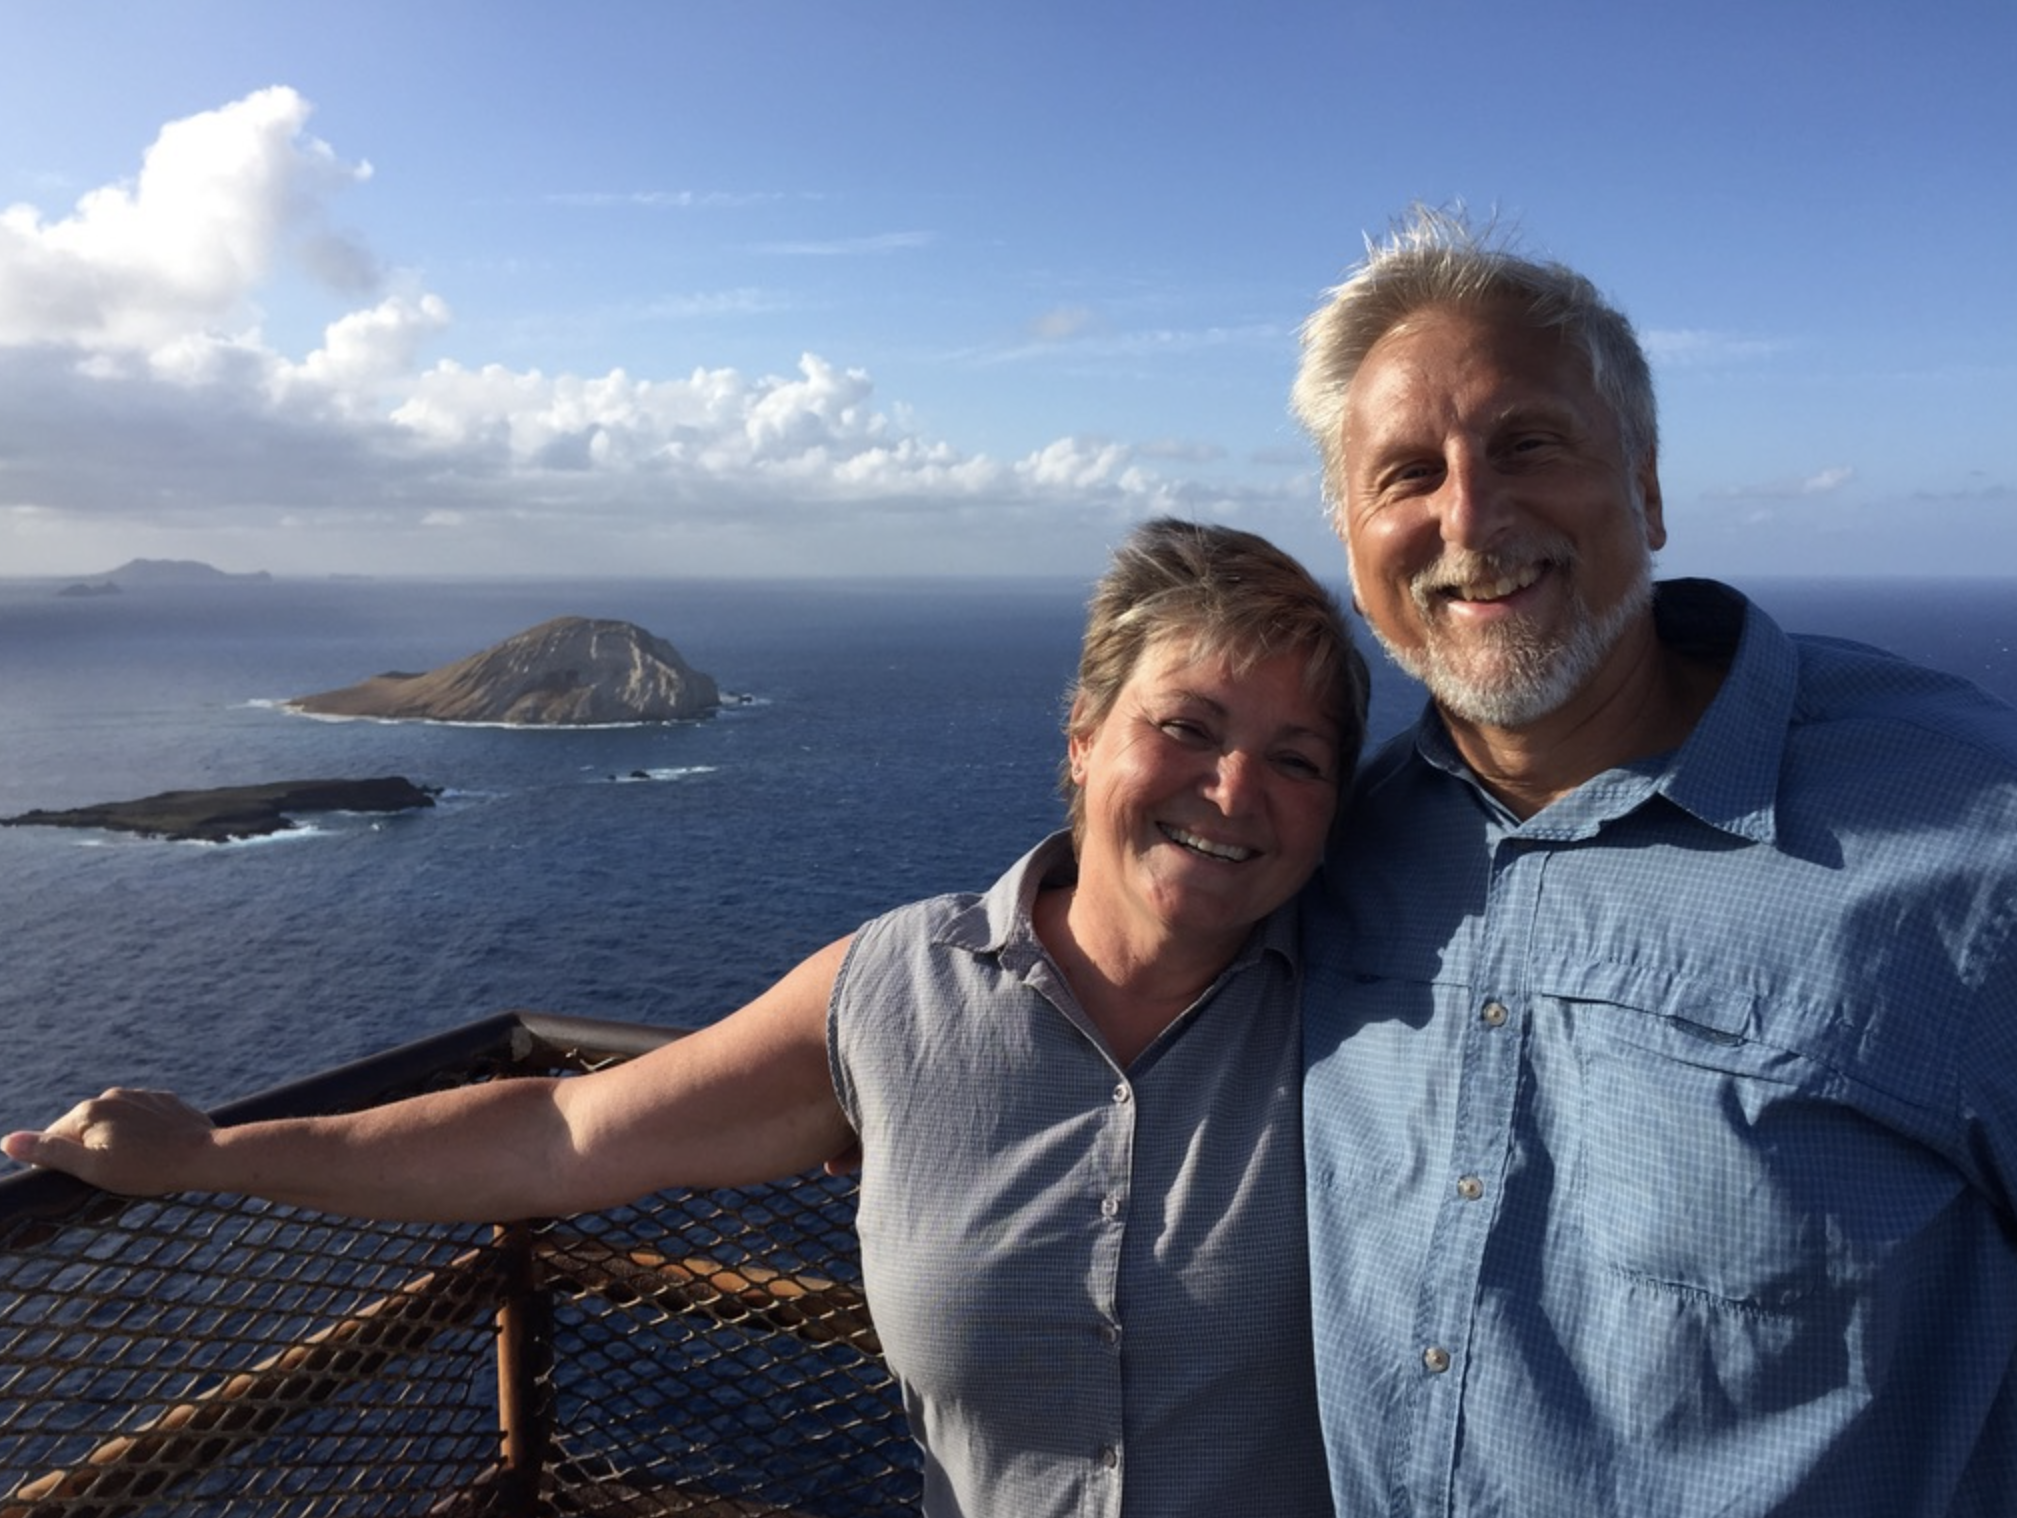 Mark and Joy on an island